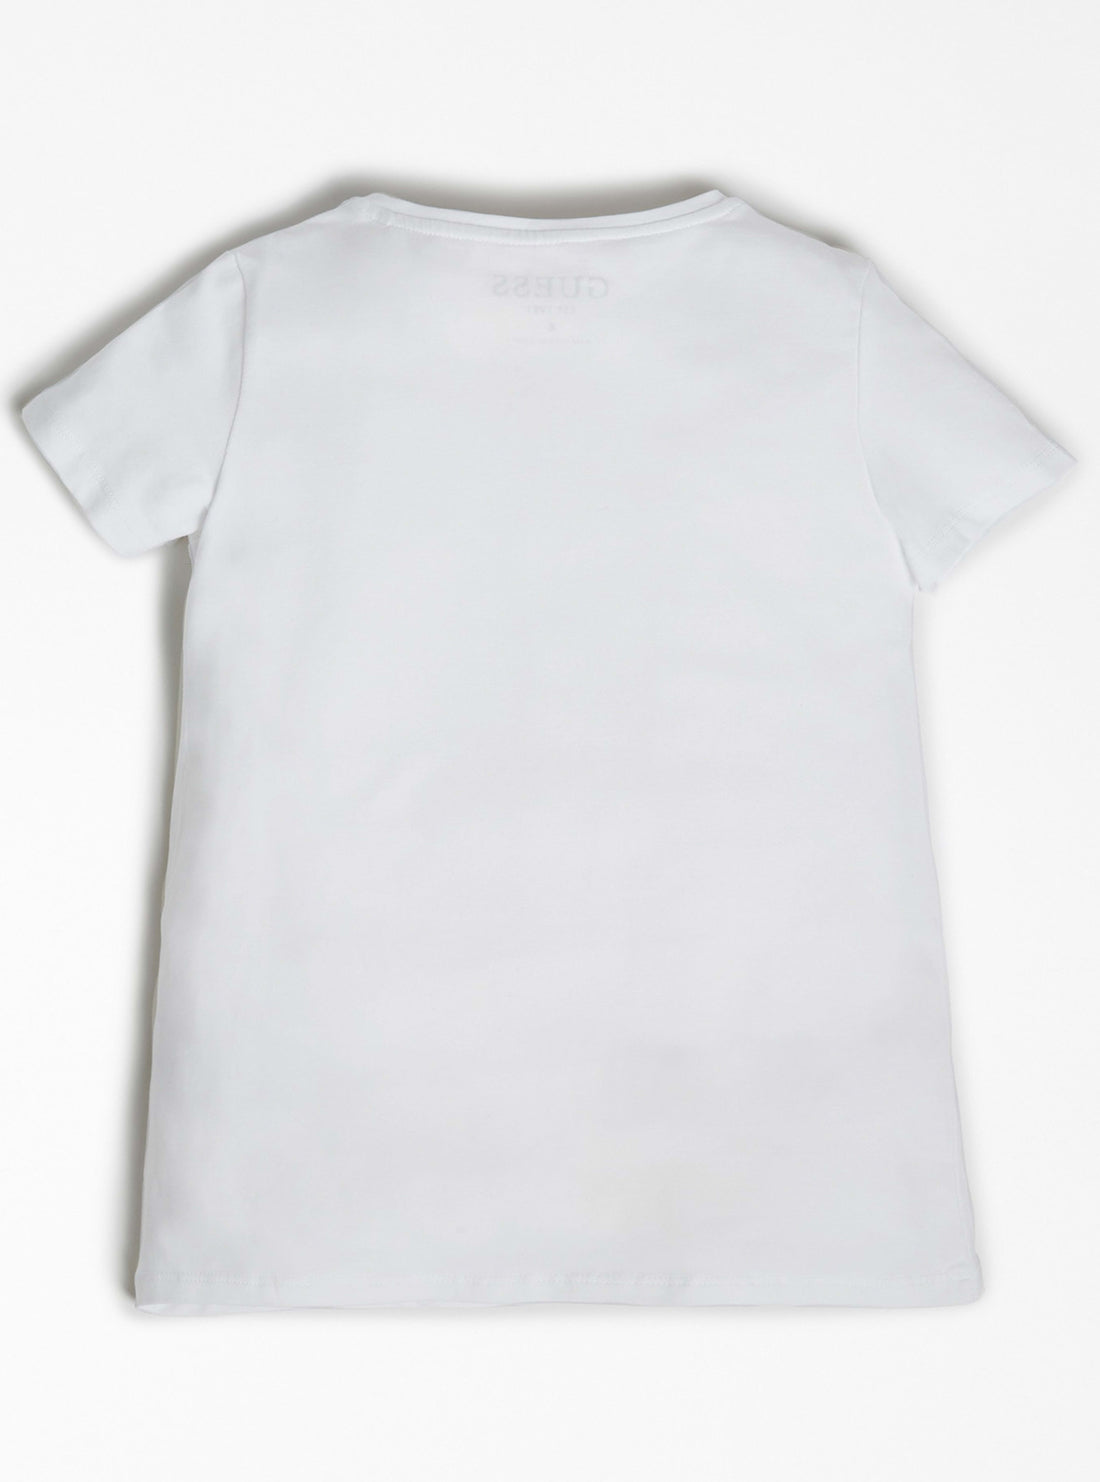 GUESS Kids White Leopard Logo T-shirt (7-16) J1BI01J1311 Back View